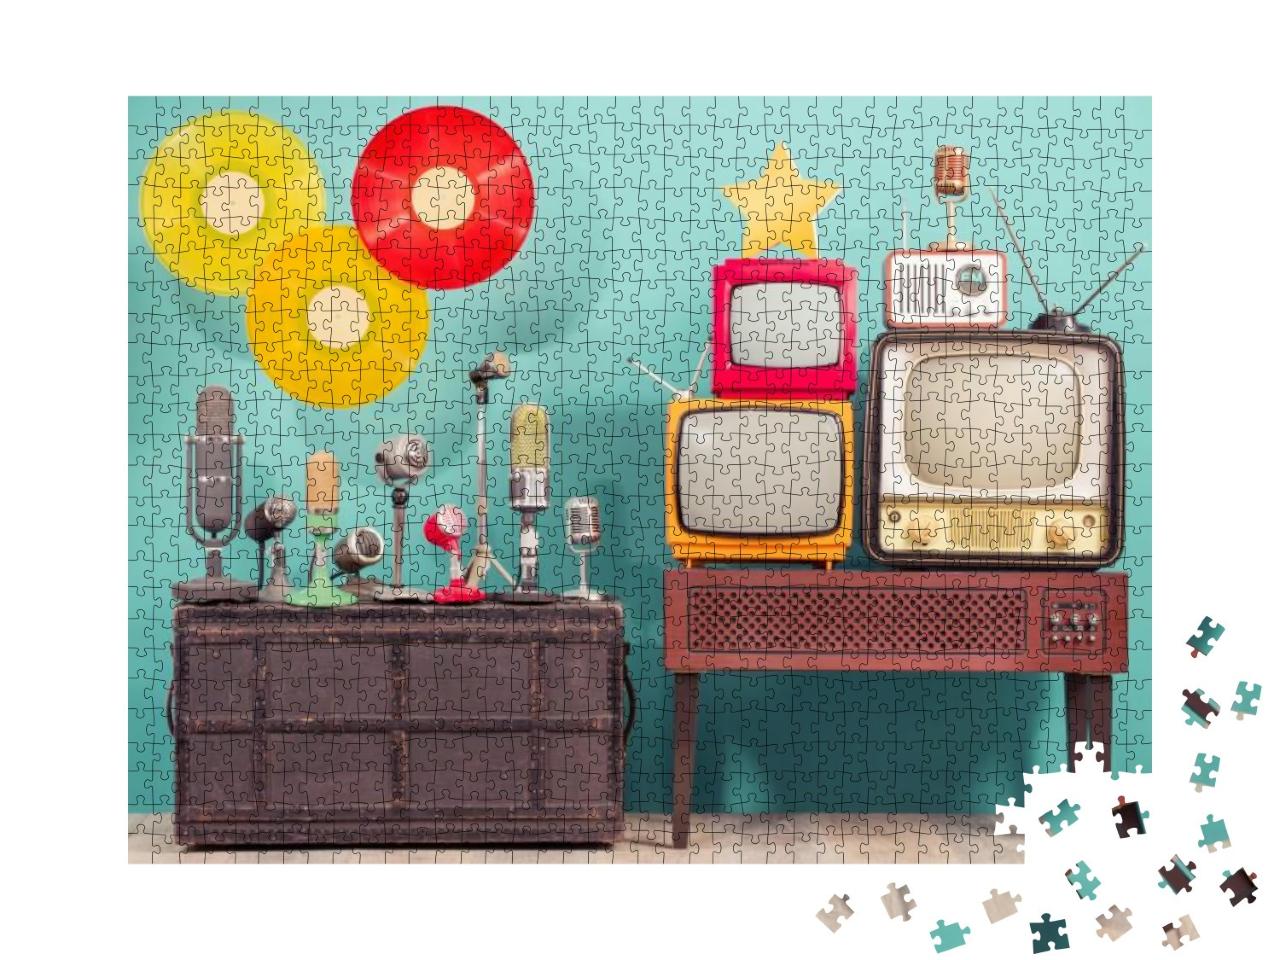 Puzzle 1000 Teile „Nostalgie: Media und Musik im Retro-Style“